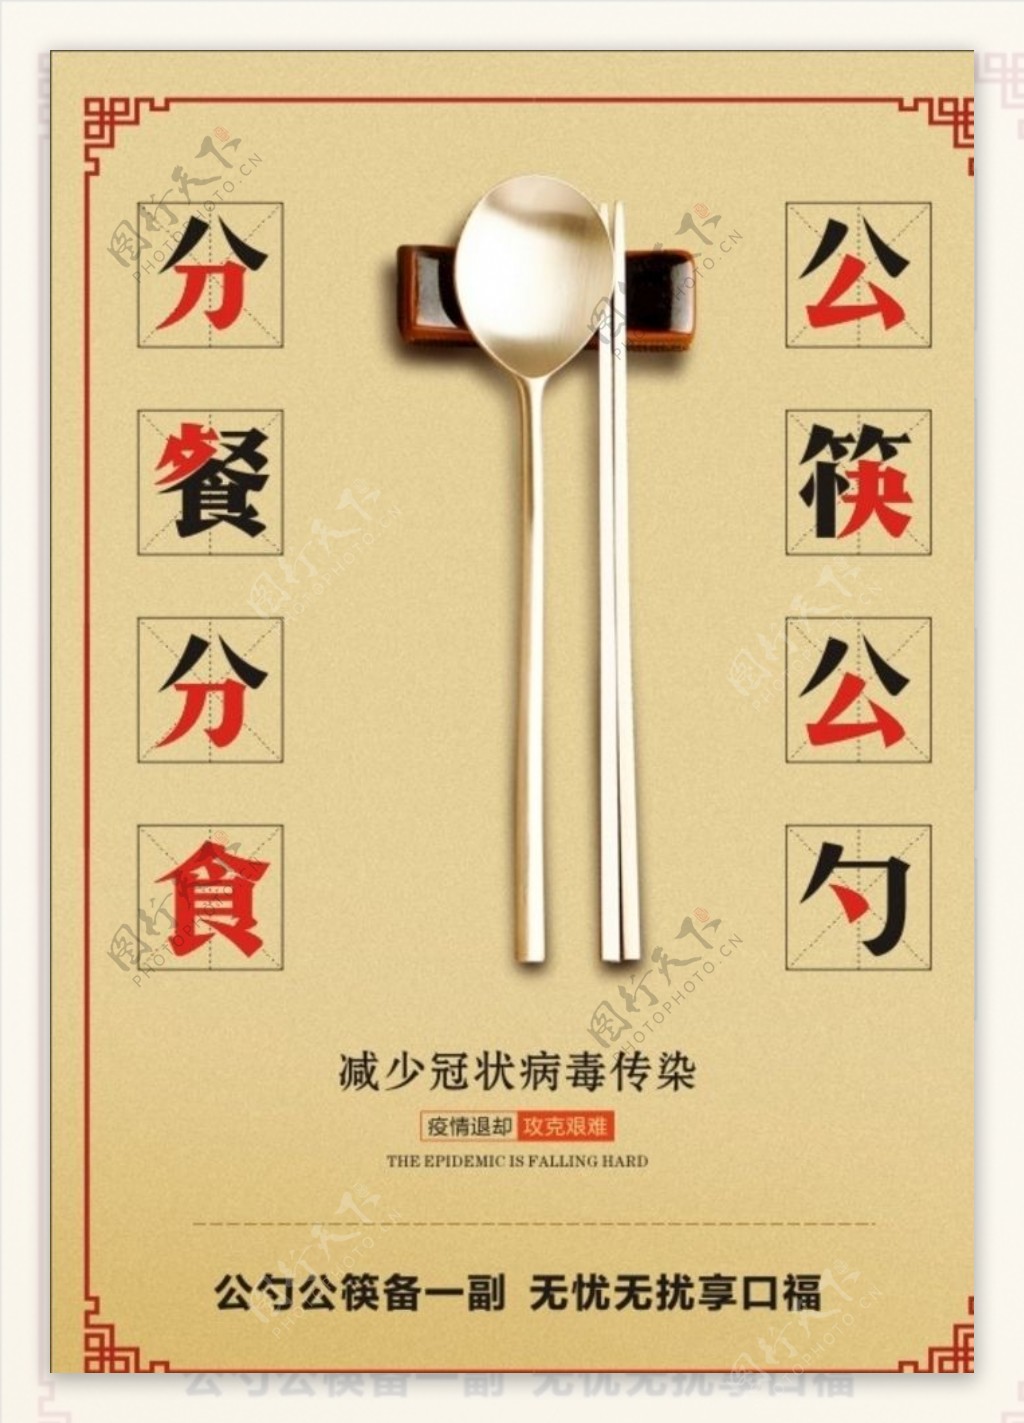 公筷公勺宣传海报